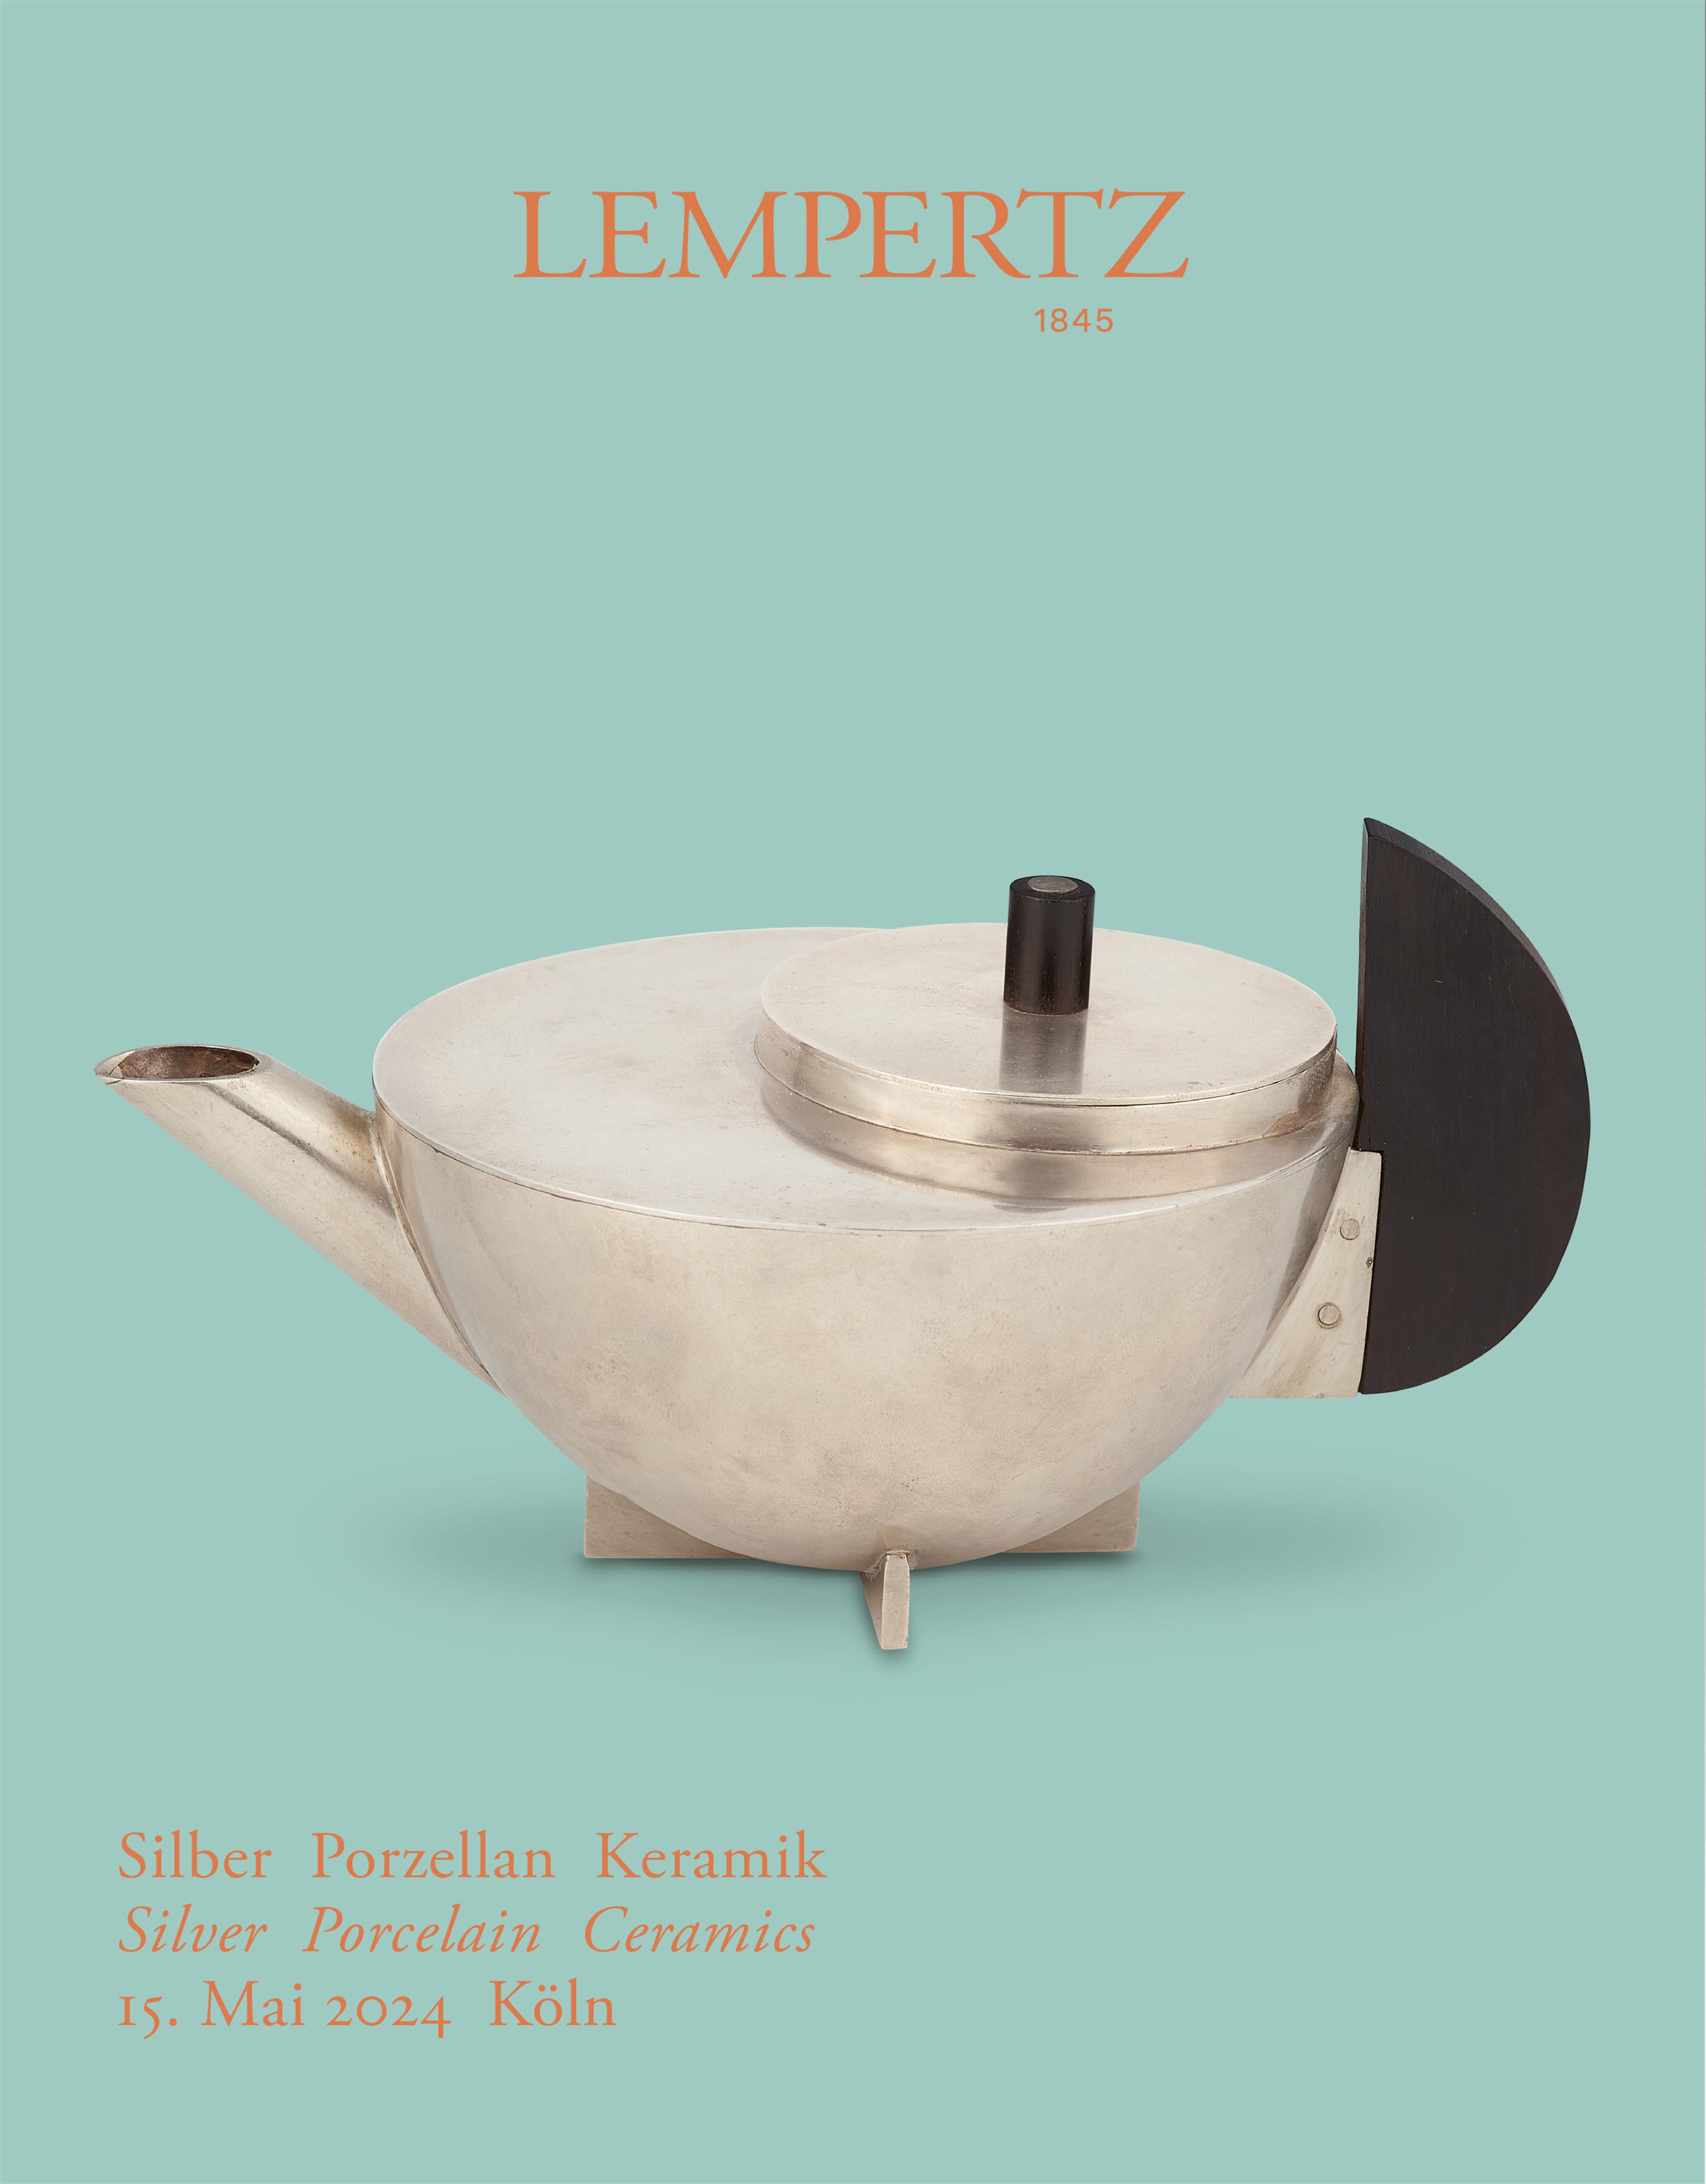 Auction house - Silver Porcelain Ceramics - Auction Catalogue 1244 – Auction House Lempertz